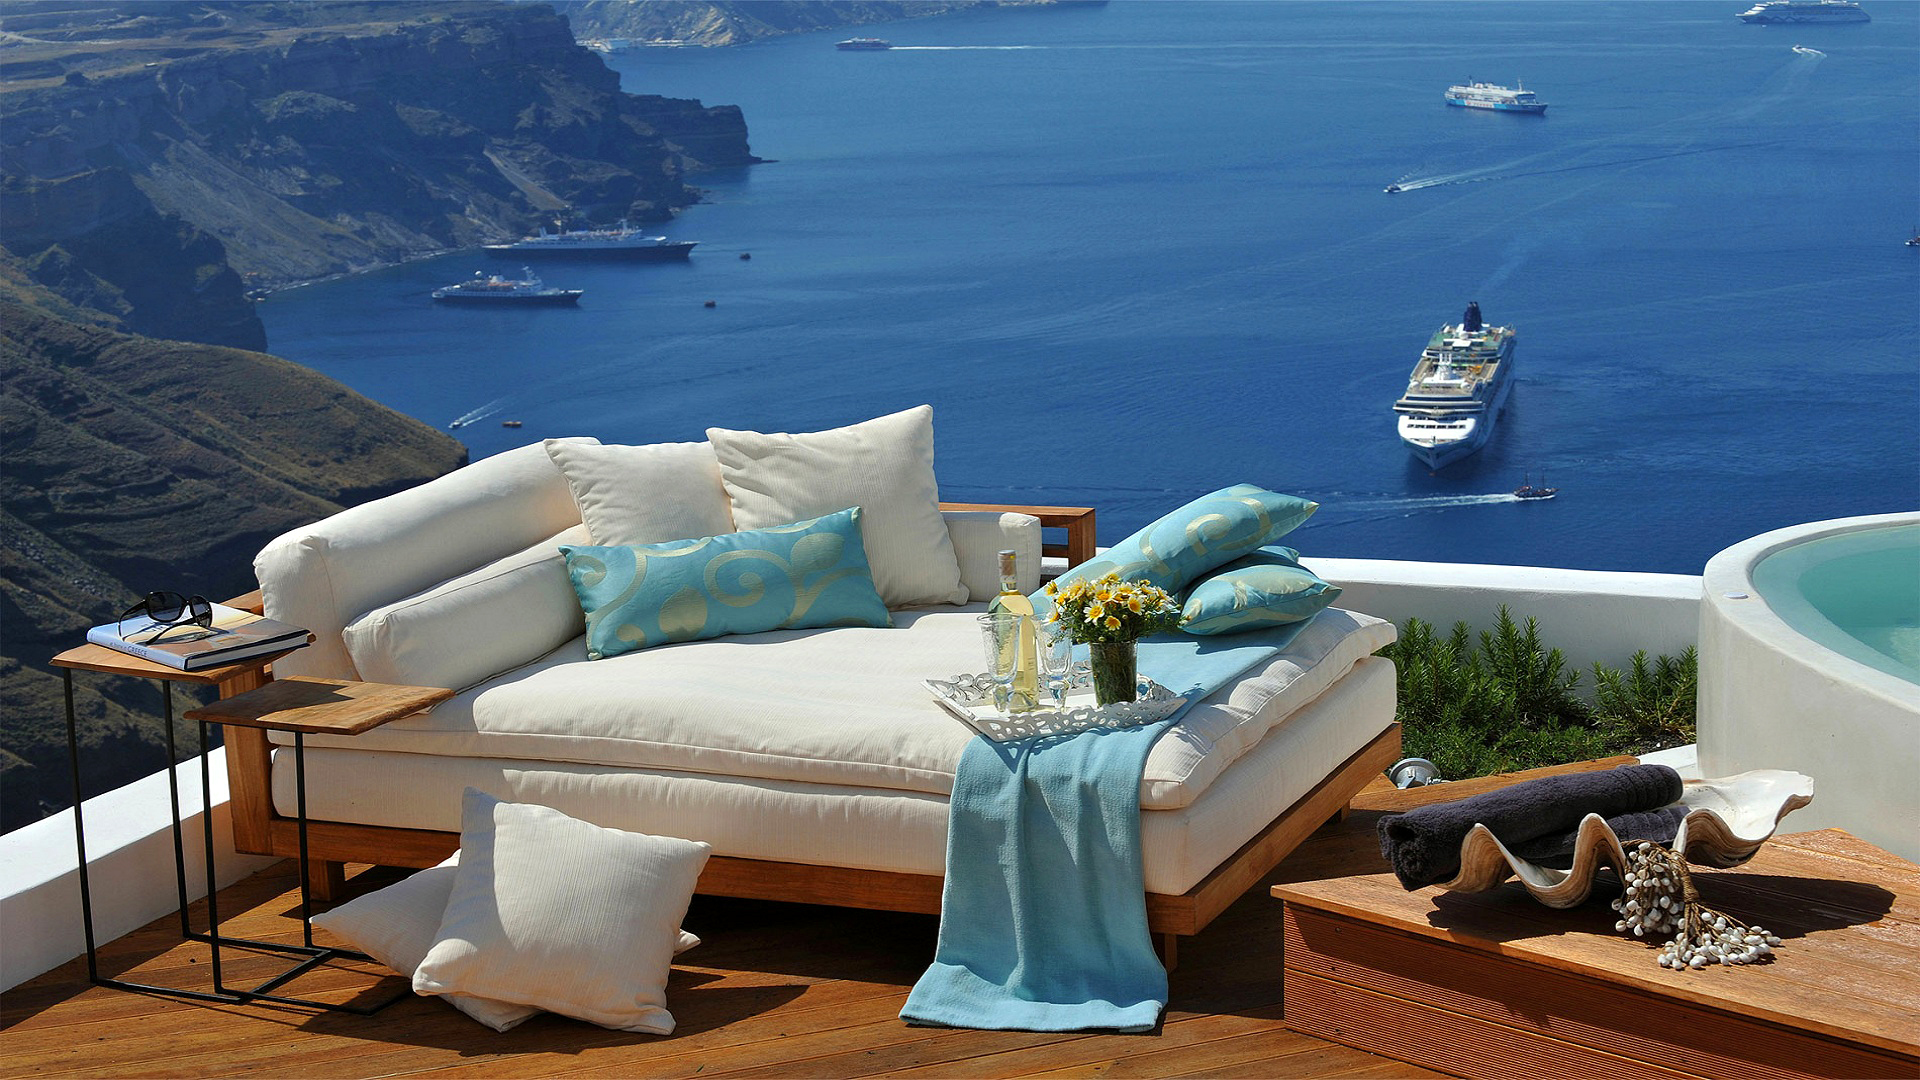 cruise ship, sofa, ocean, photography, holiday, cushion, greece, lounge, pillow, santorini, ship